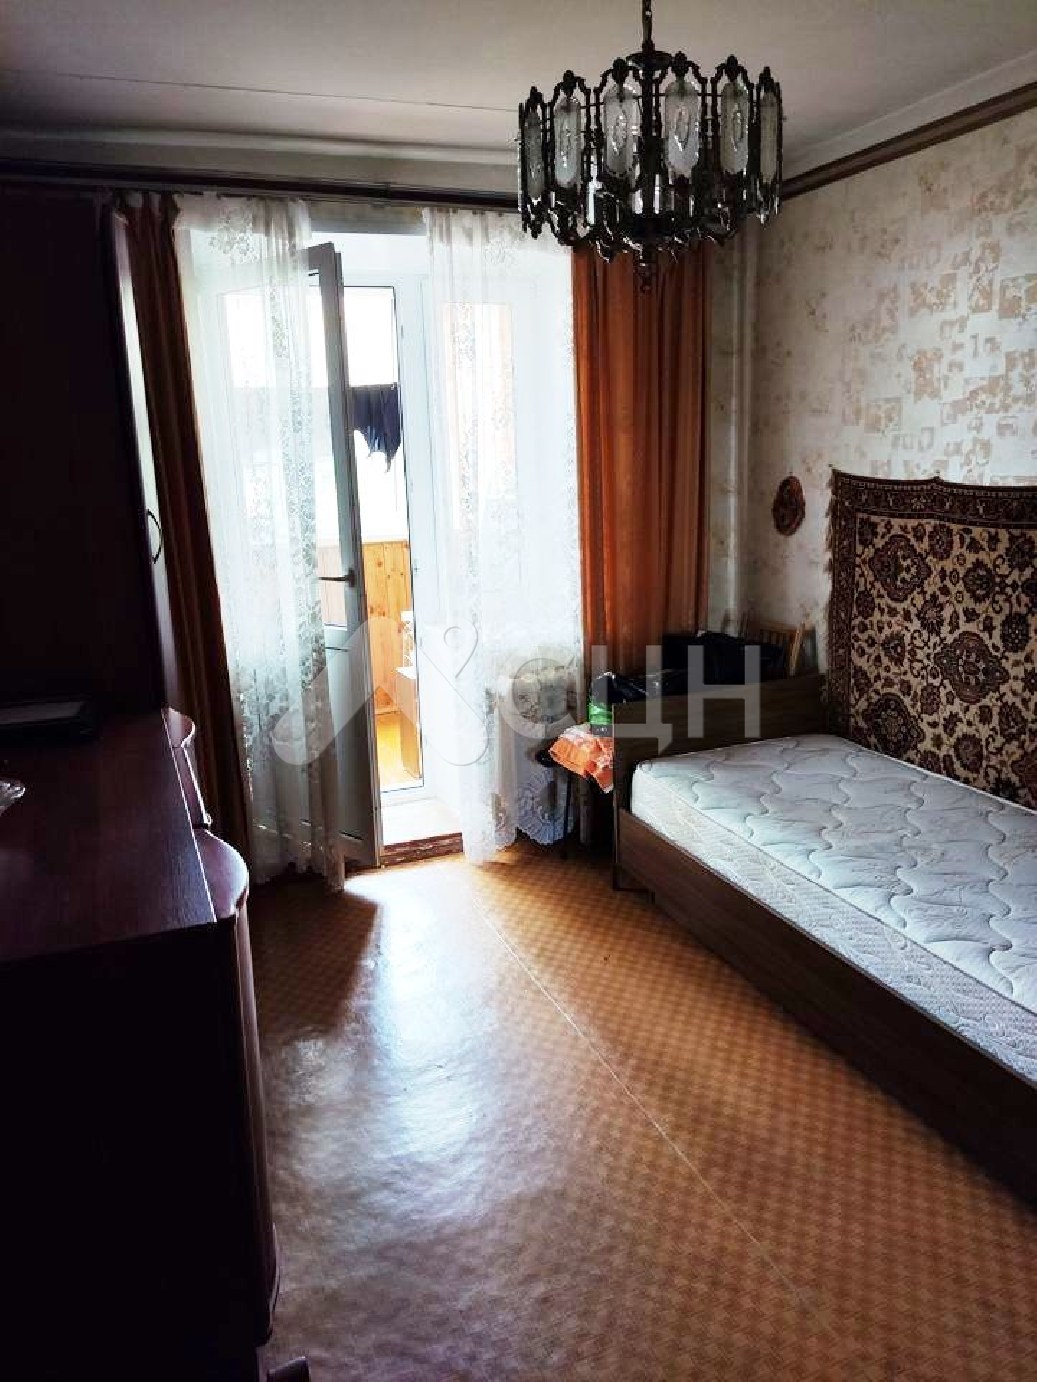 обЪявления саров квартиры
: Г. Саров, улица Некрасова, 11, 3-комн квартира, этаж 2 из 9, продажа.